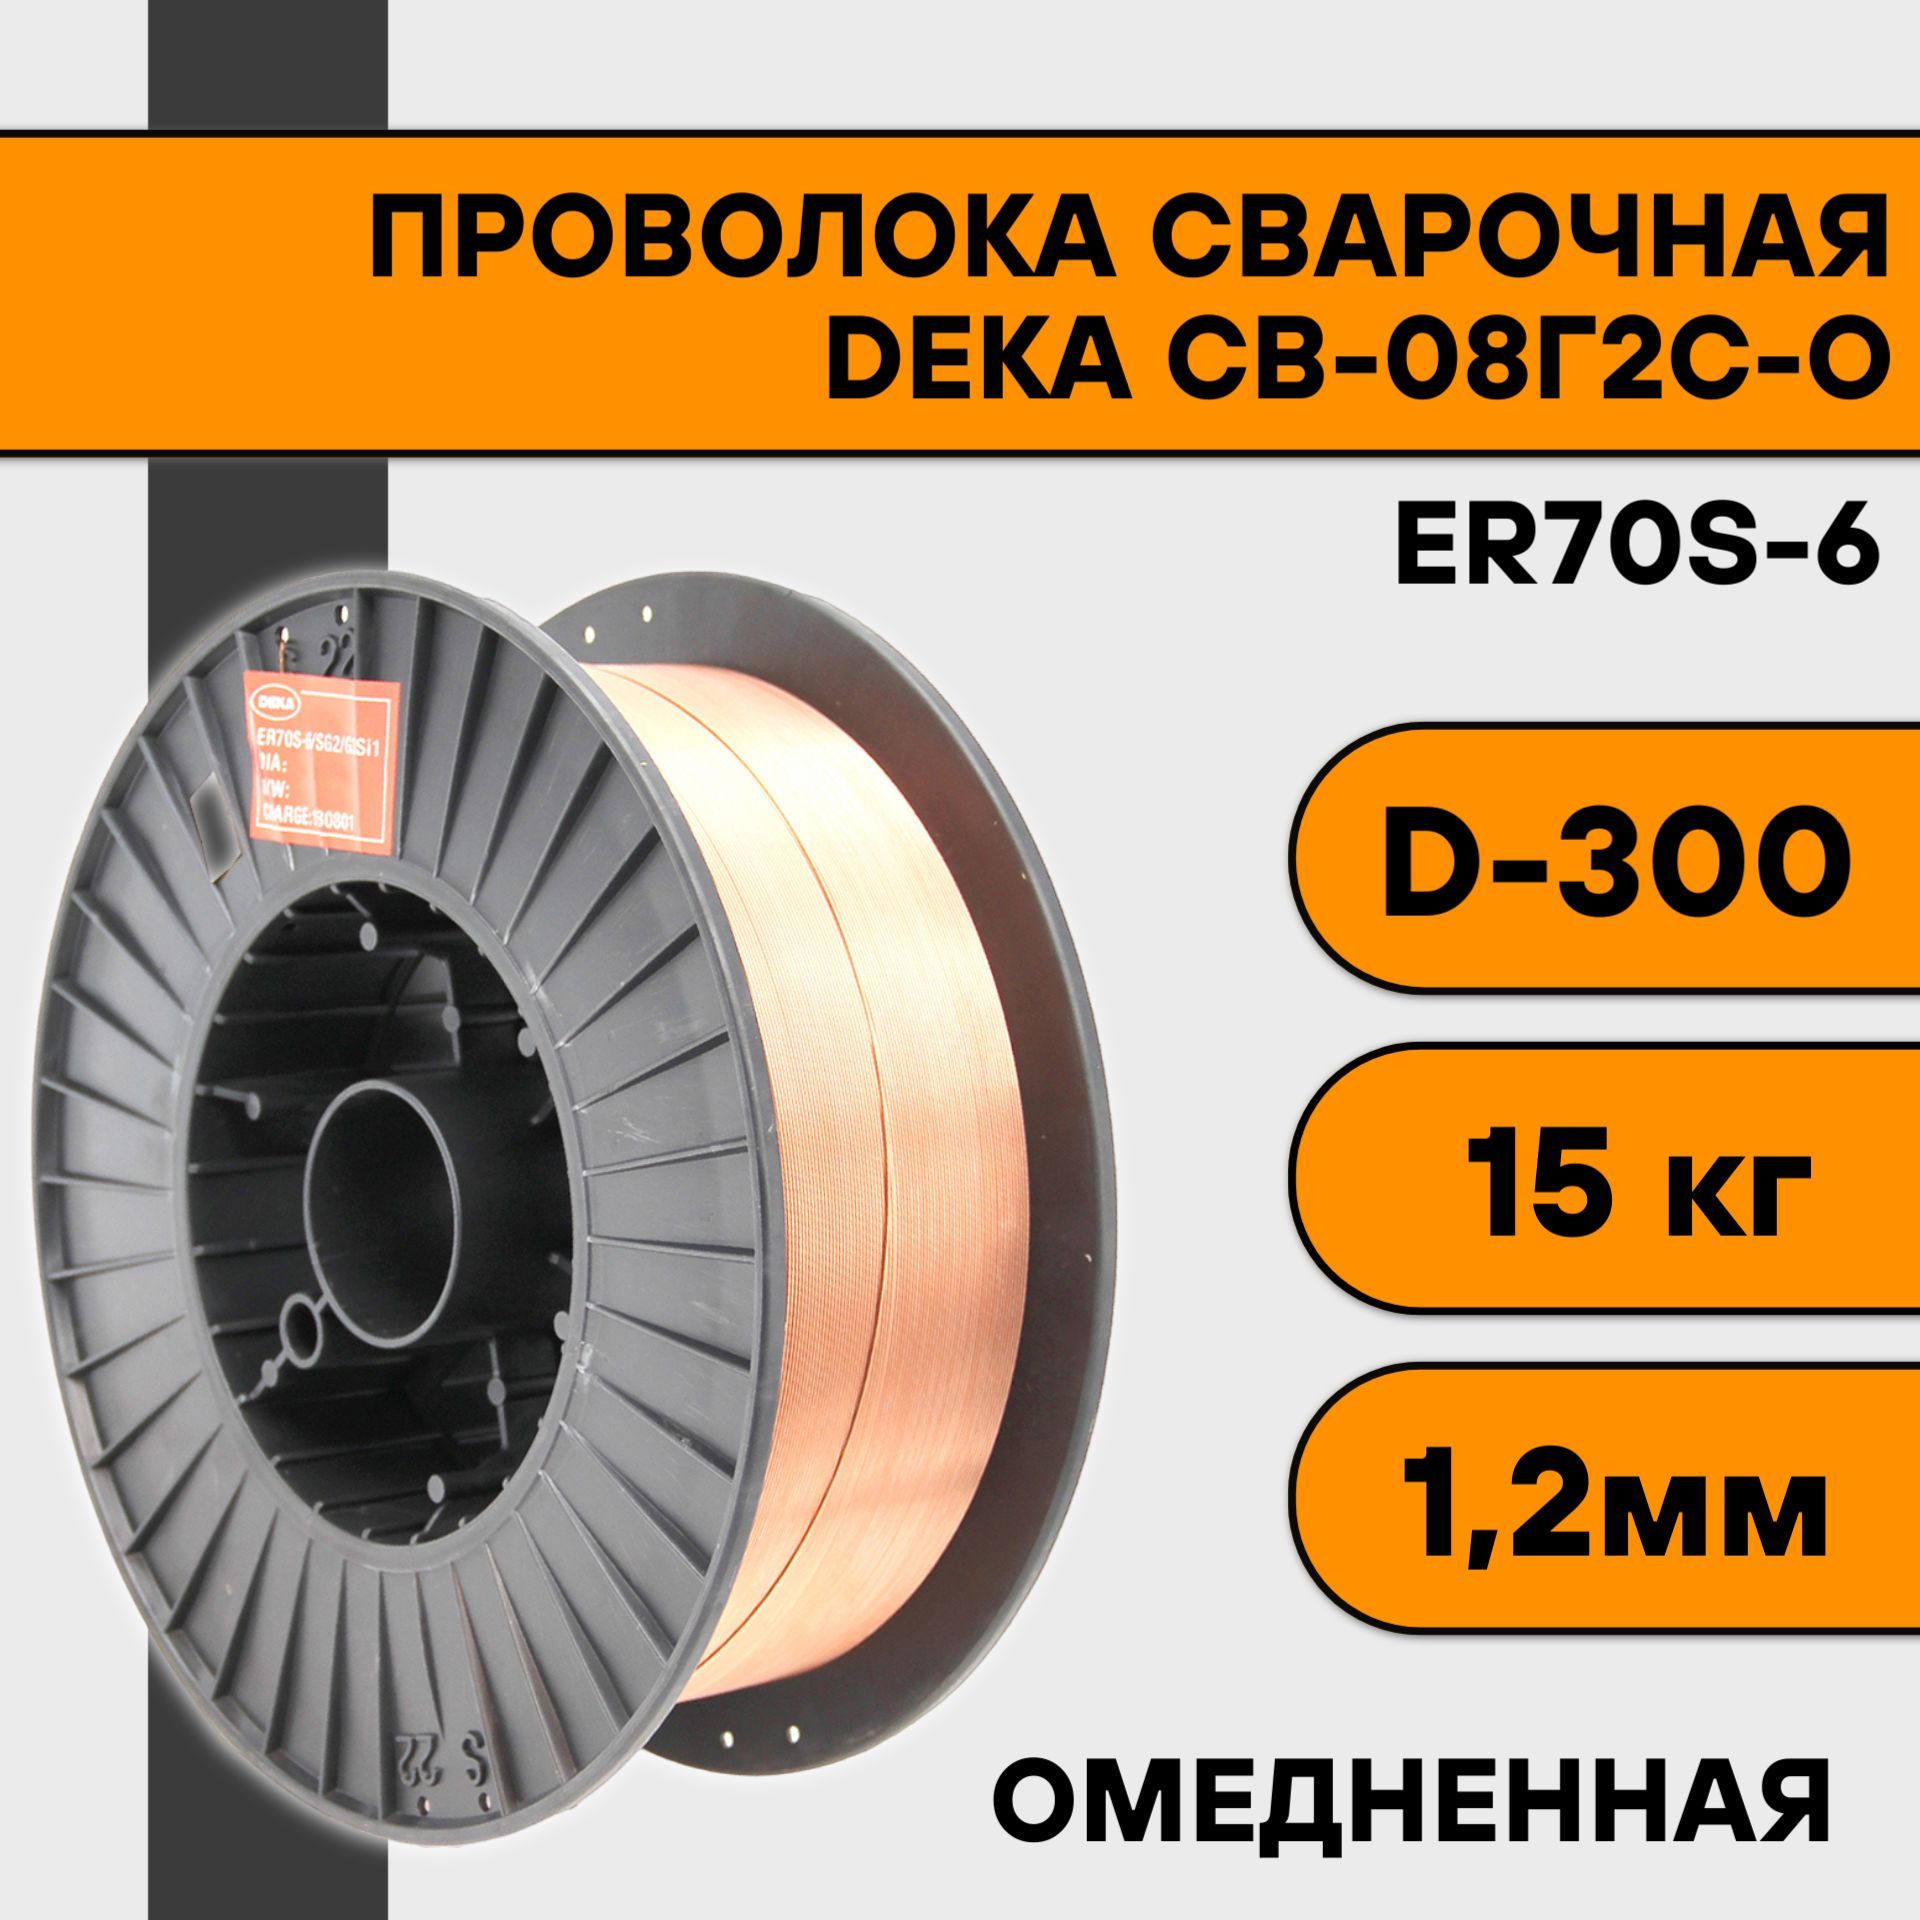 Сварочная проволока омедненная Deka ER70S-6 ф 1,2 мм (15 кг) D300 омедненная проволока deka